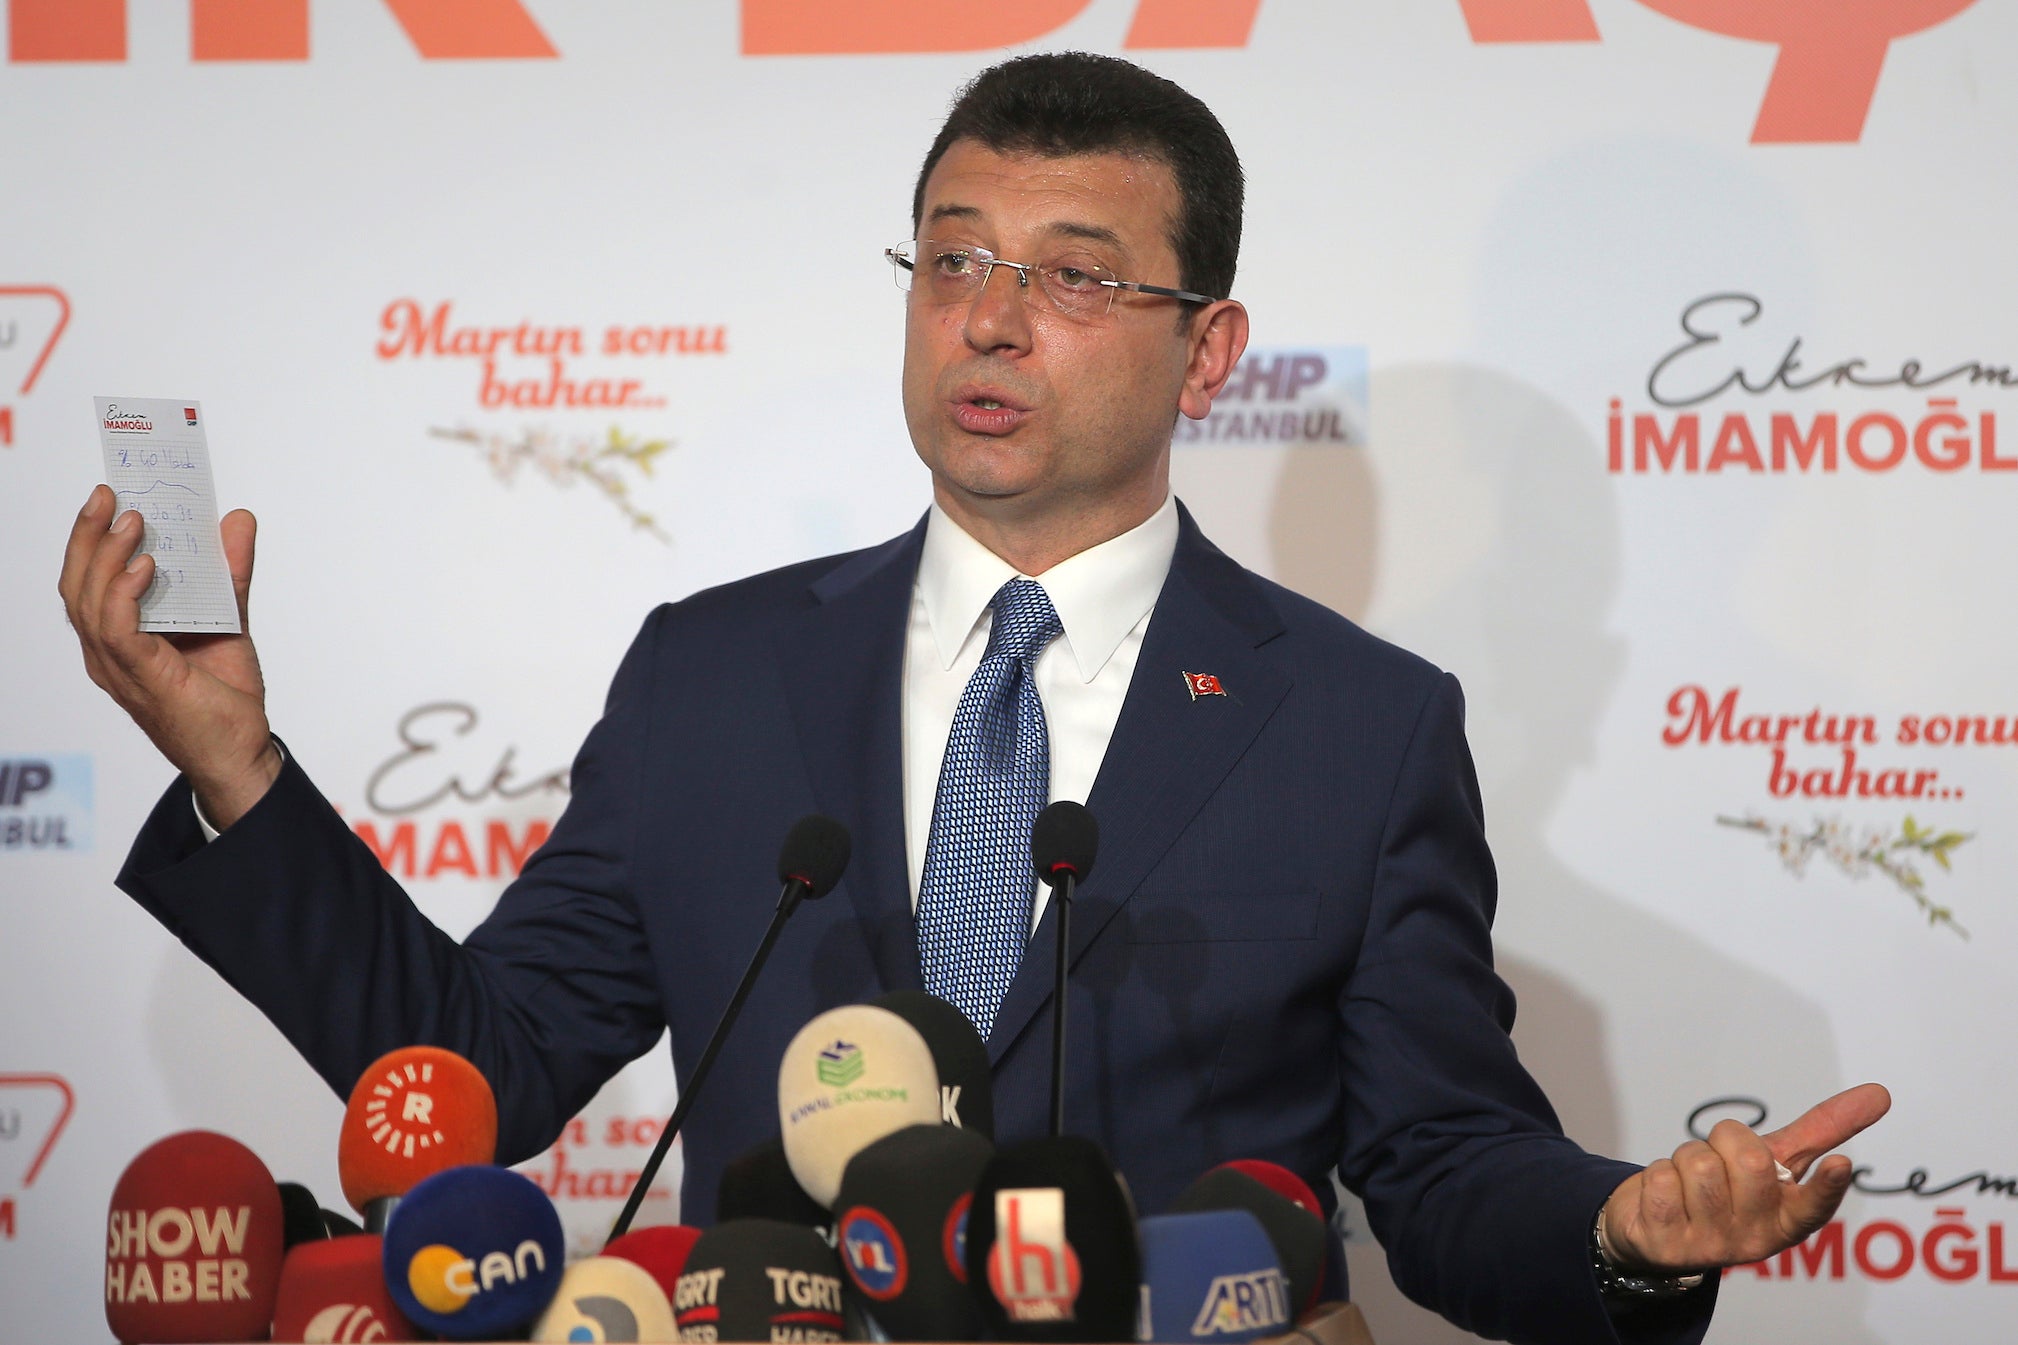 Ekrem Imamoglu, opposition candidate for Istanbul mayor